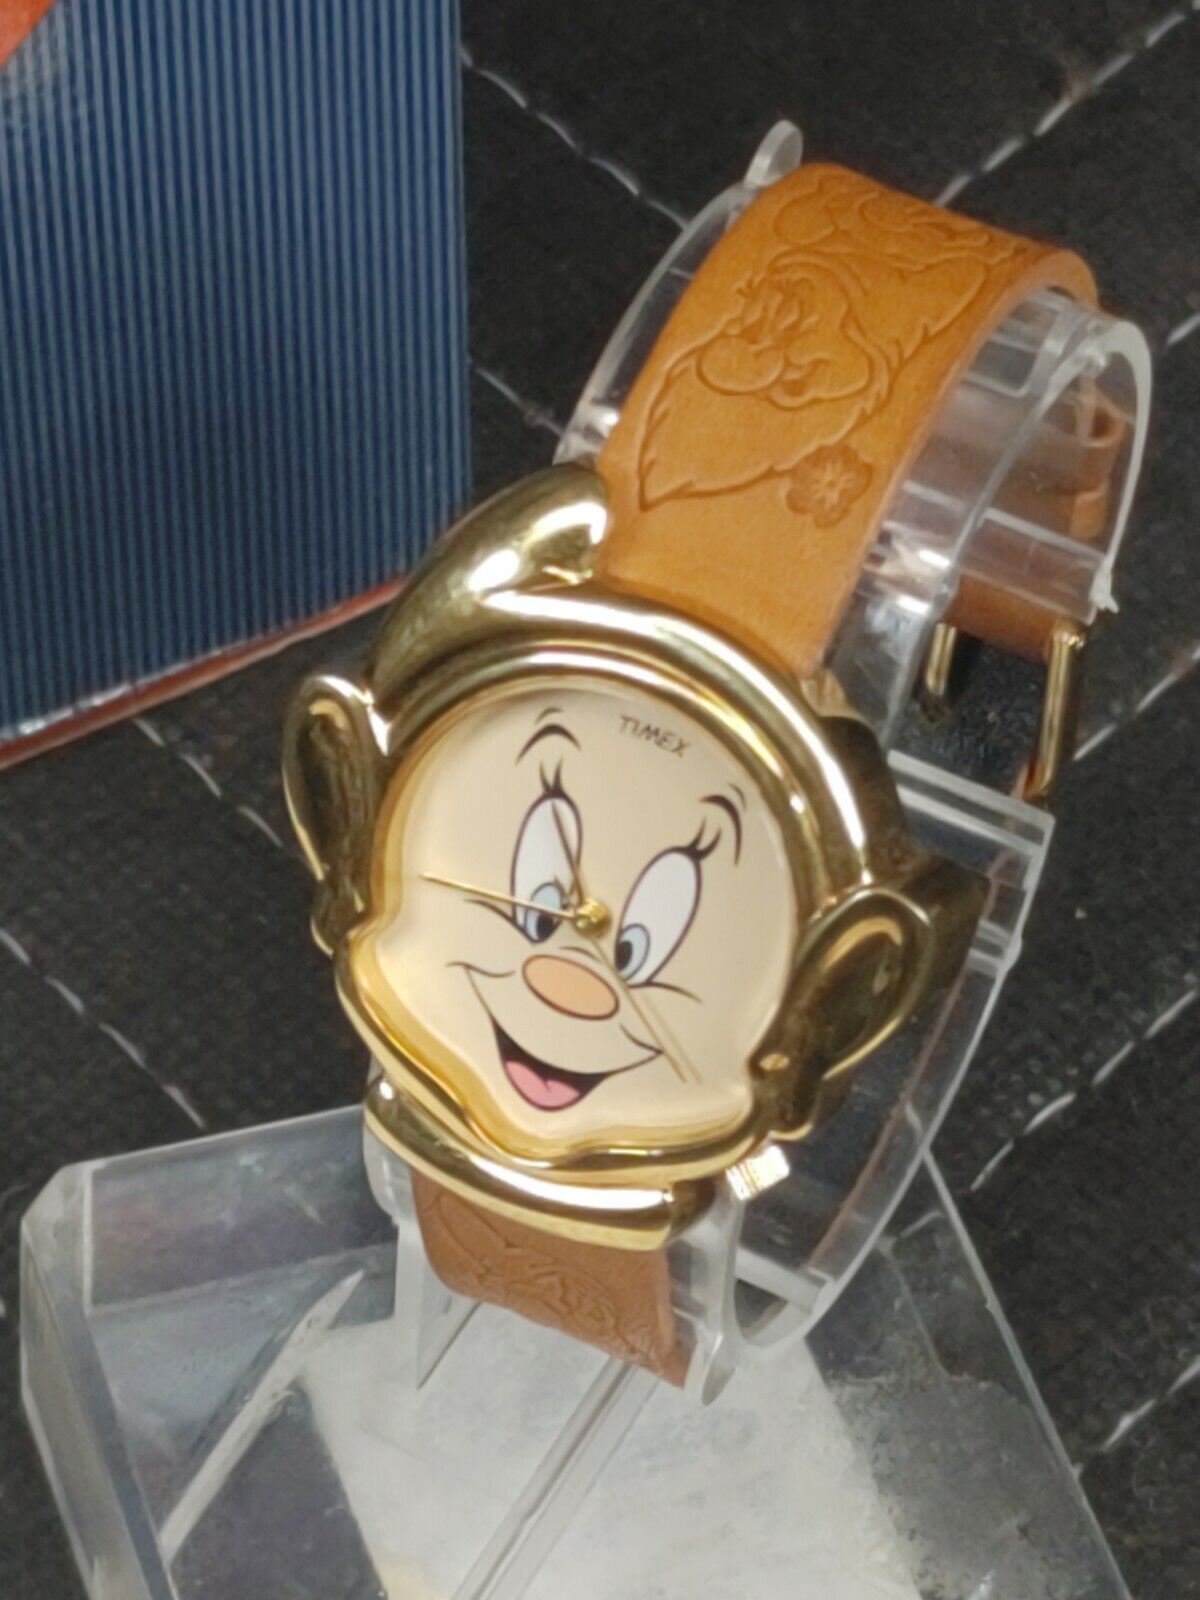 NOS Vintage Timex Watch Walt Disney Dopey Snow White and the Seven Dwarfs